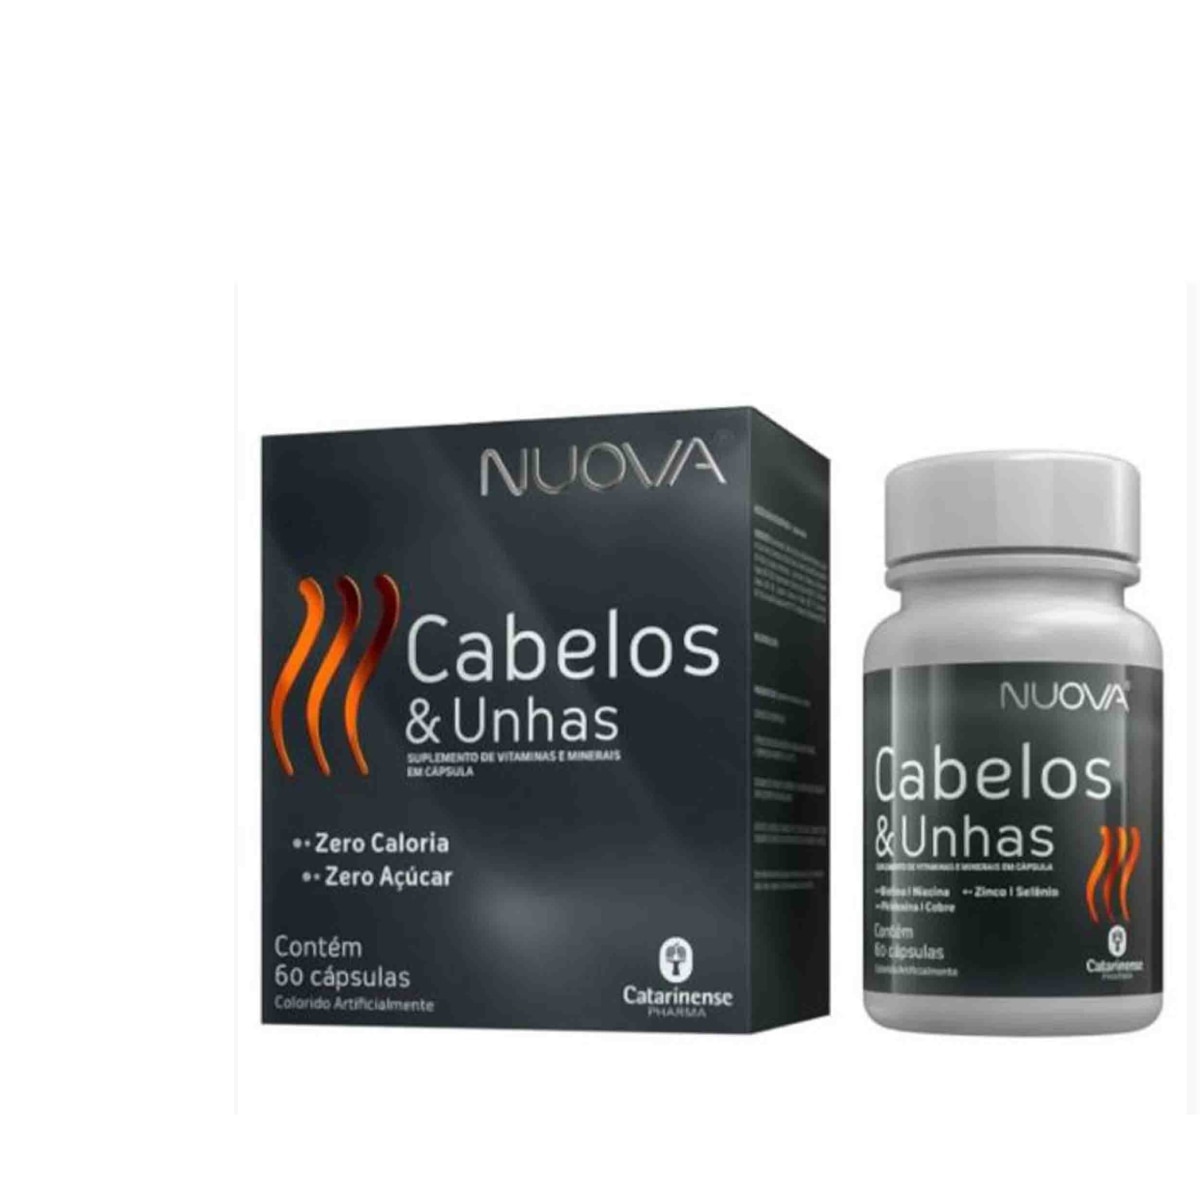 Nuova Cabelos e Unhas Catarinense Pharma 60 Capsulas